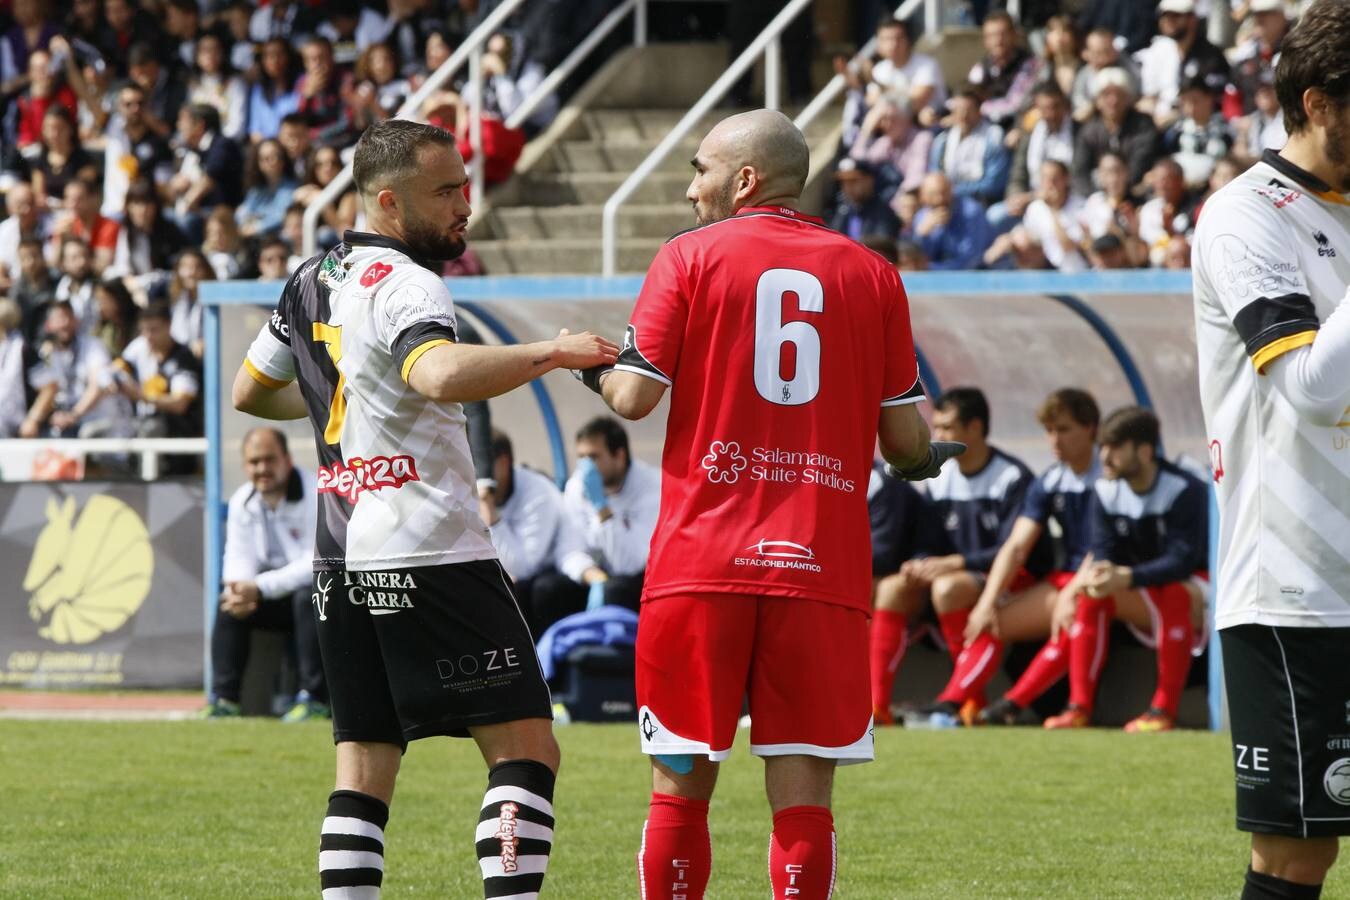 Fotos: El derbi entre Unionistas CF y CF Salmantino UDS en juego